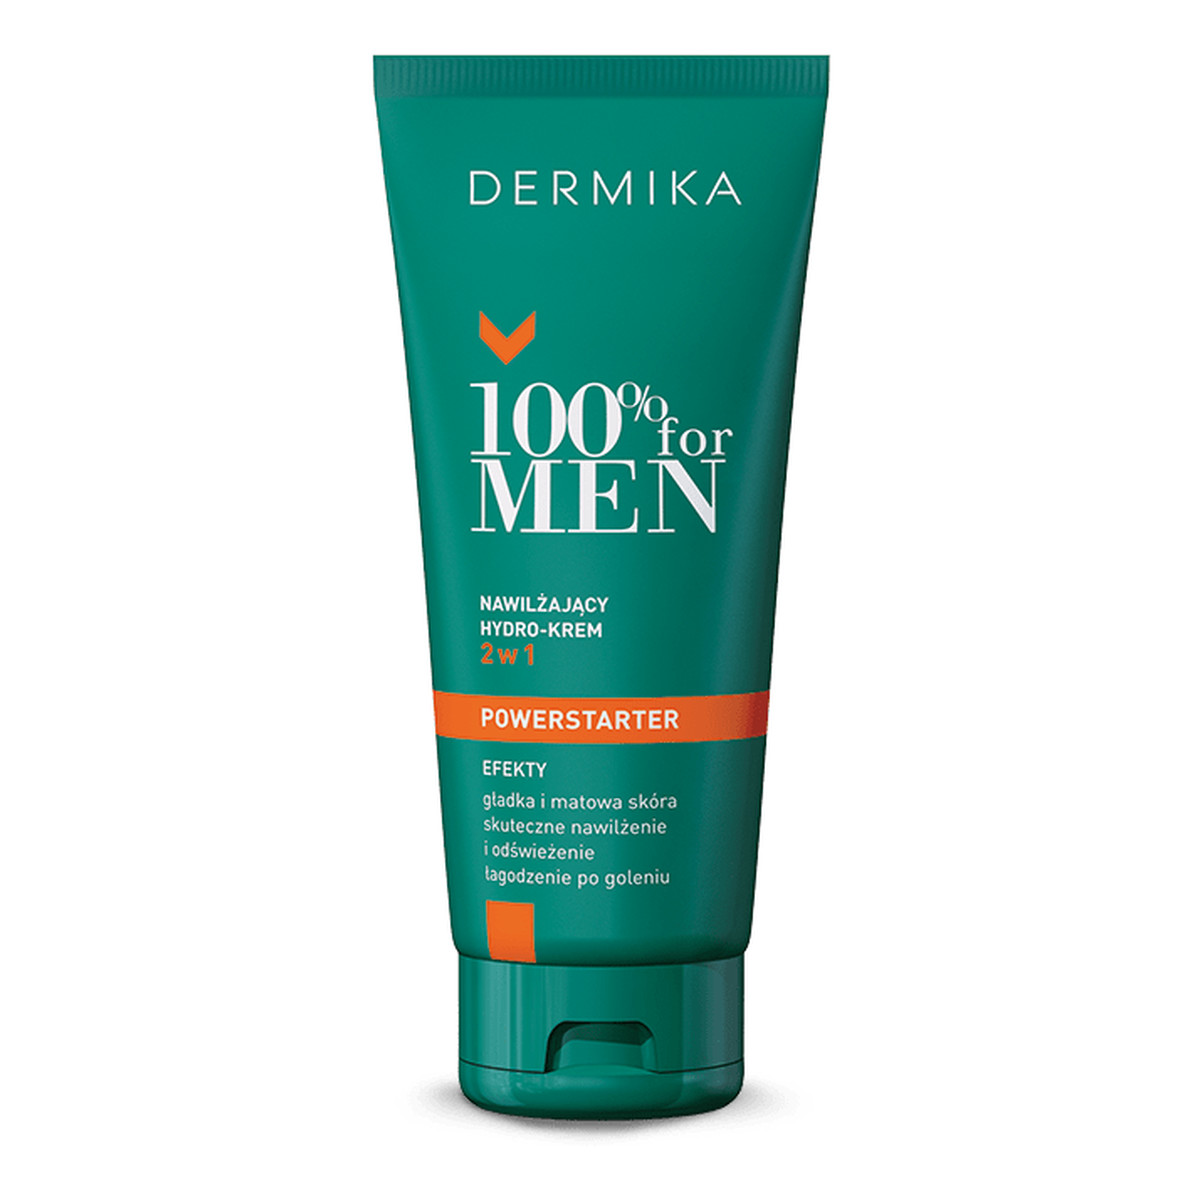 Dermika 100% for Men nawilżający hydro-krem po goleniu do twarzy 2w1 50ml